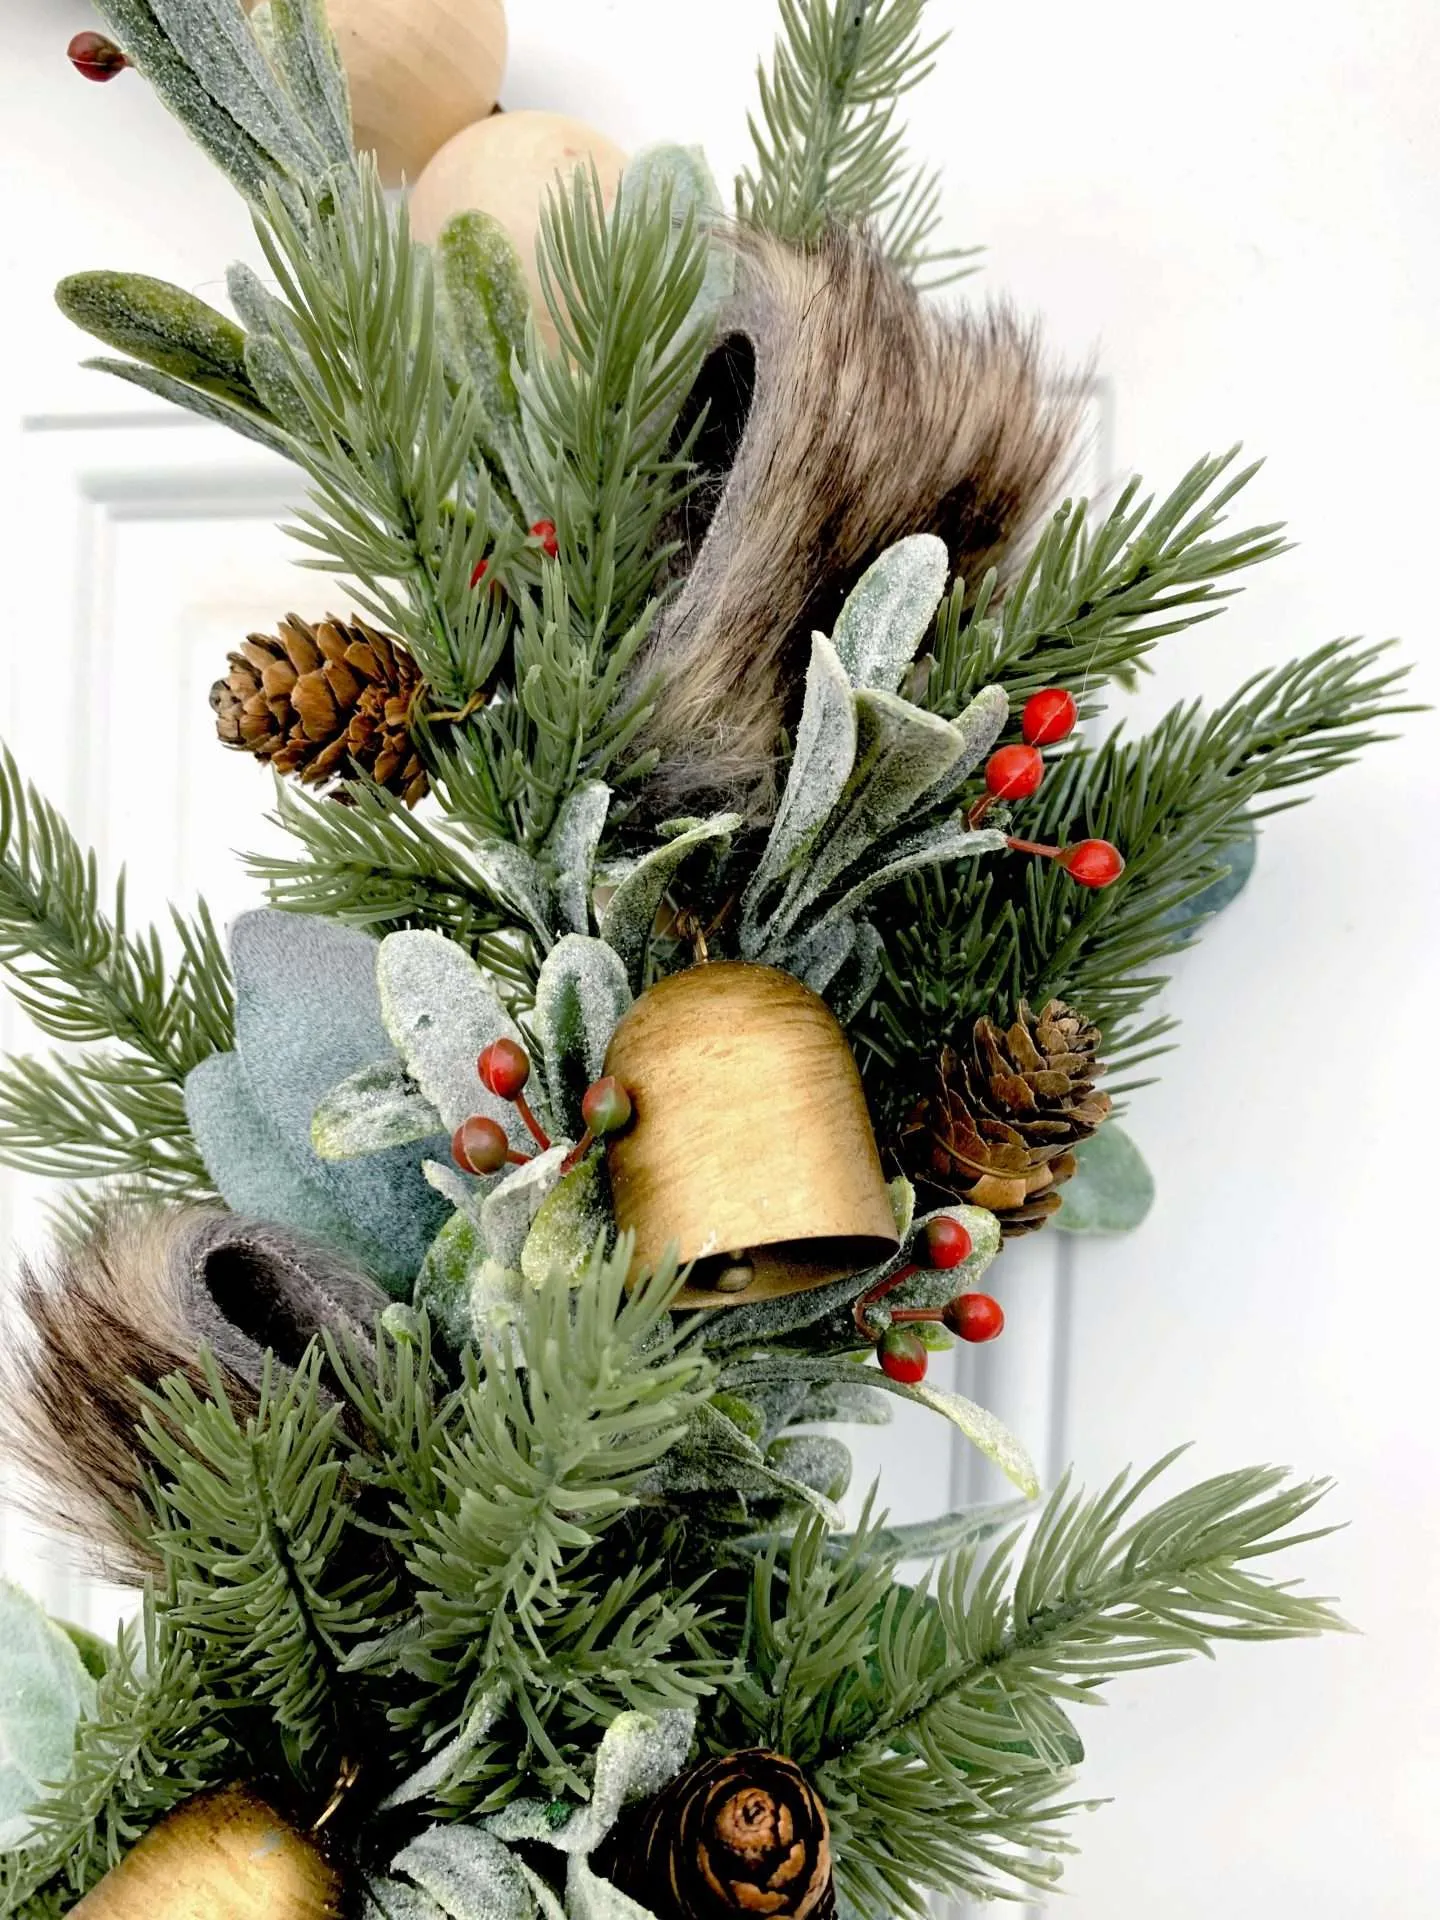 DIY Rustic Wood Bead Christmas Wreath Tutorial